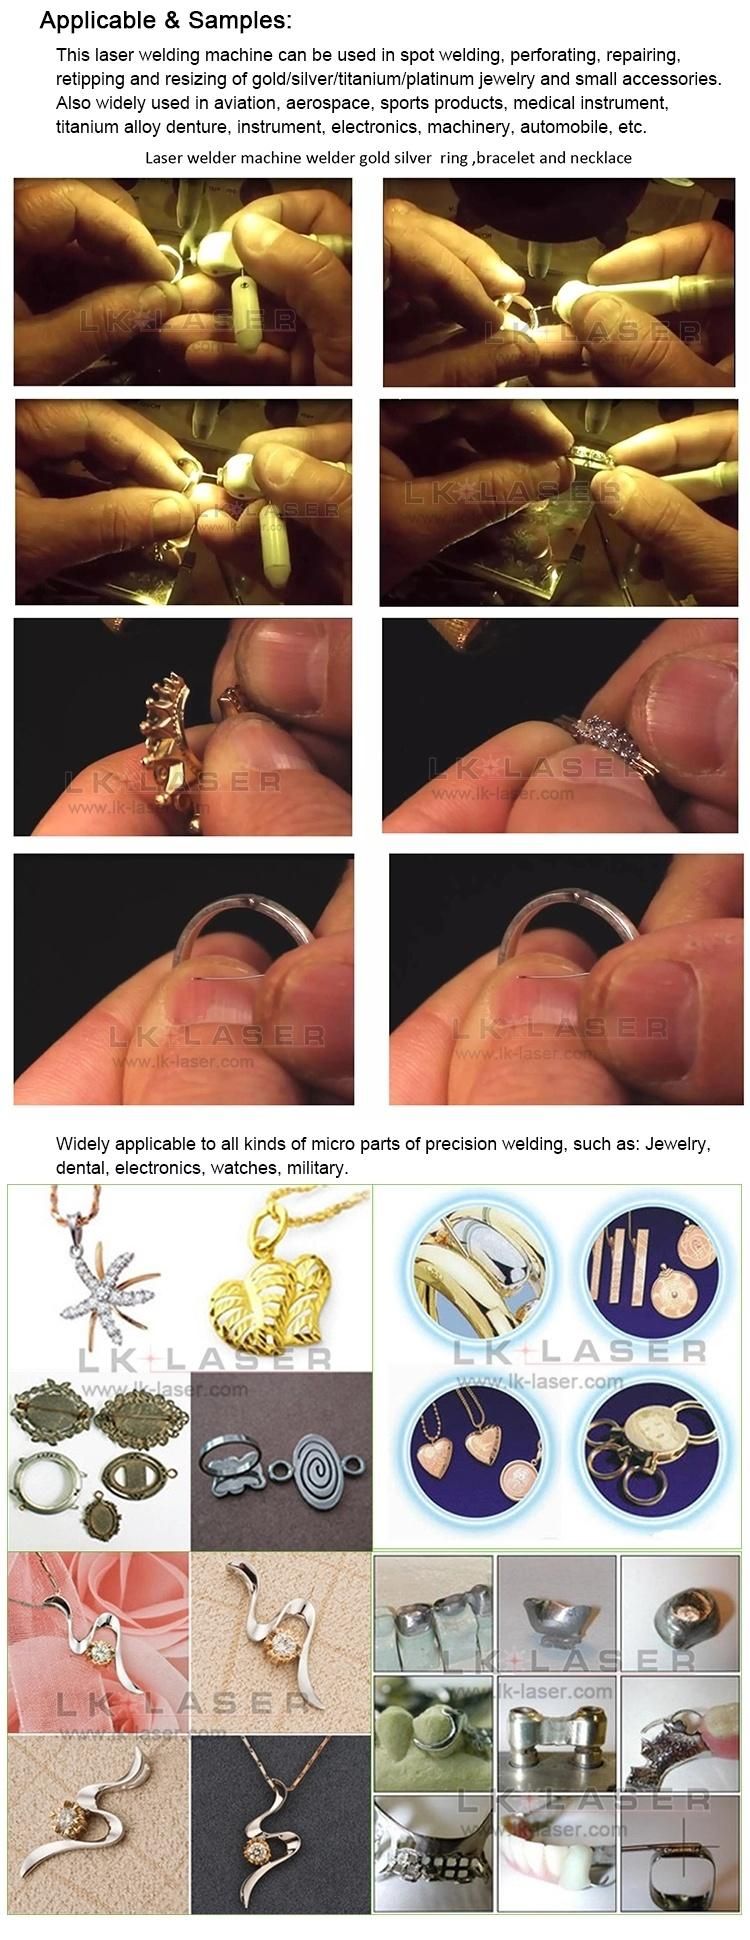 Laser Jewelry Welding/ Repairing Machine